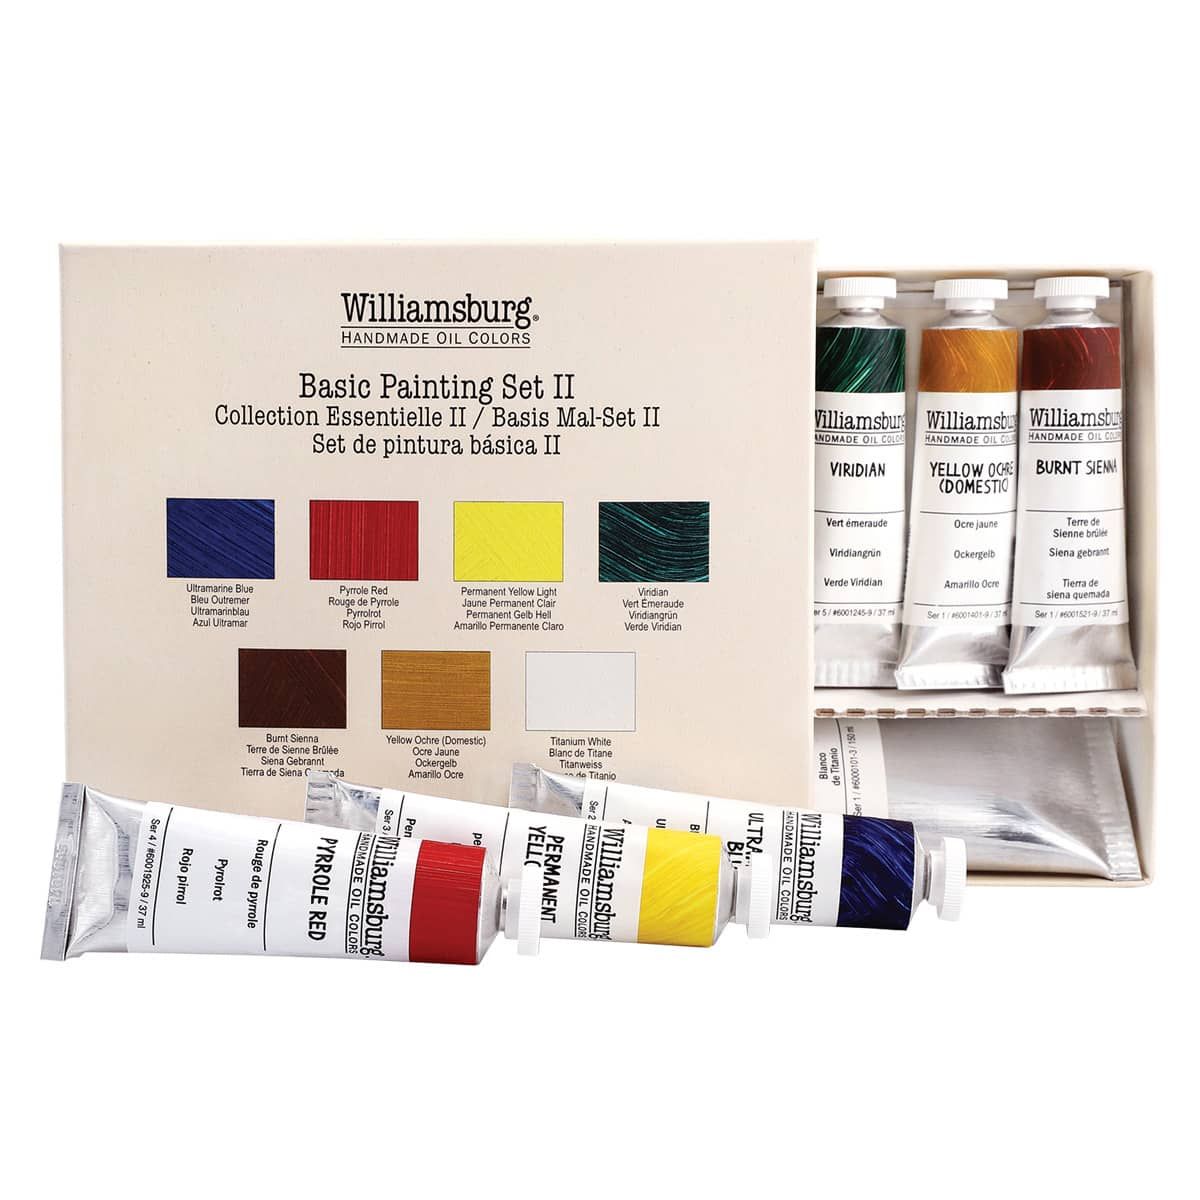 Williamsburg Handmade Oil Starter Paint Sets